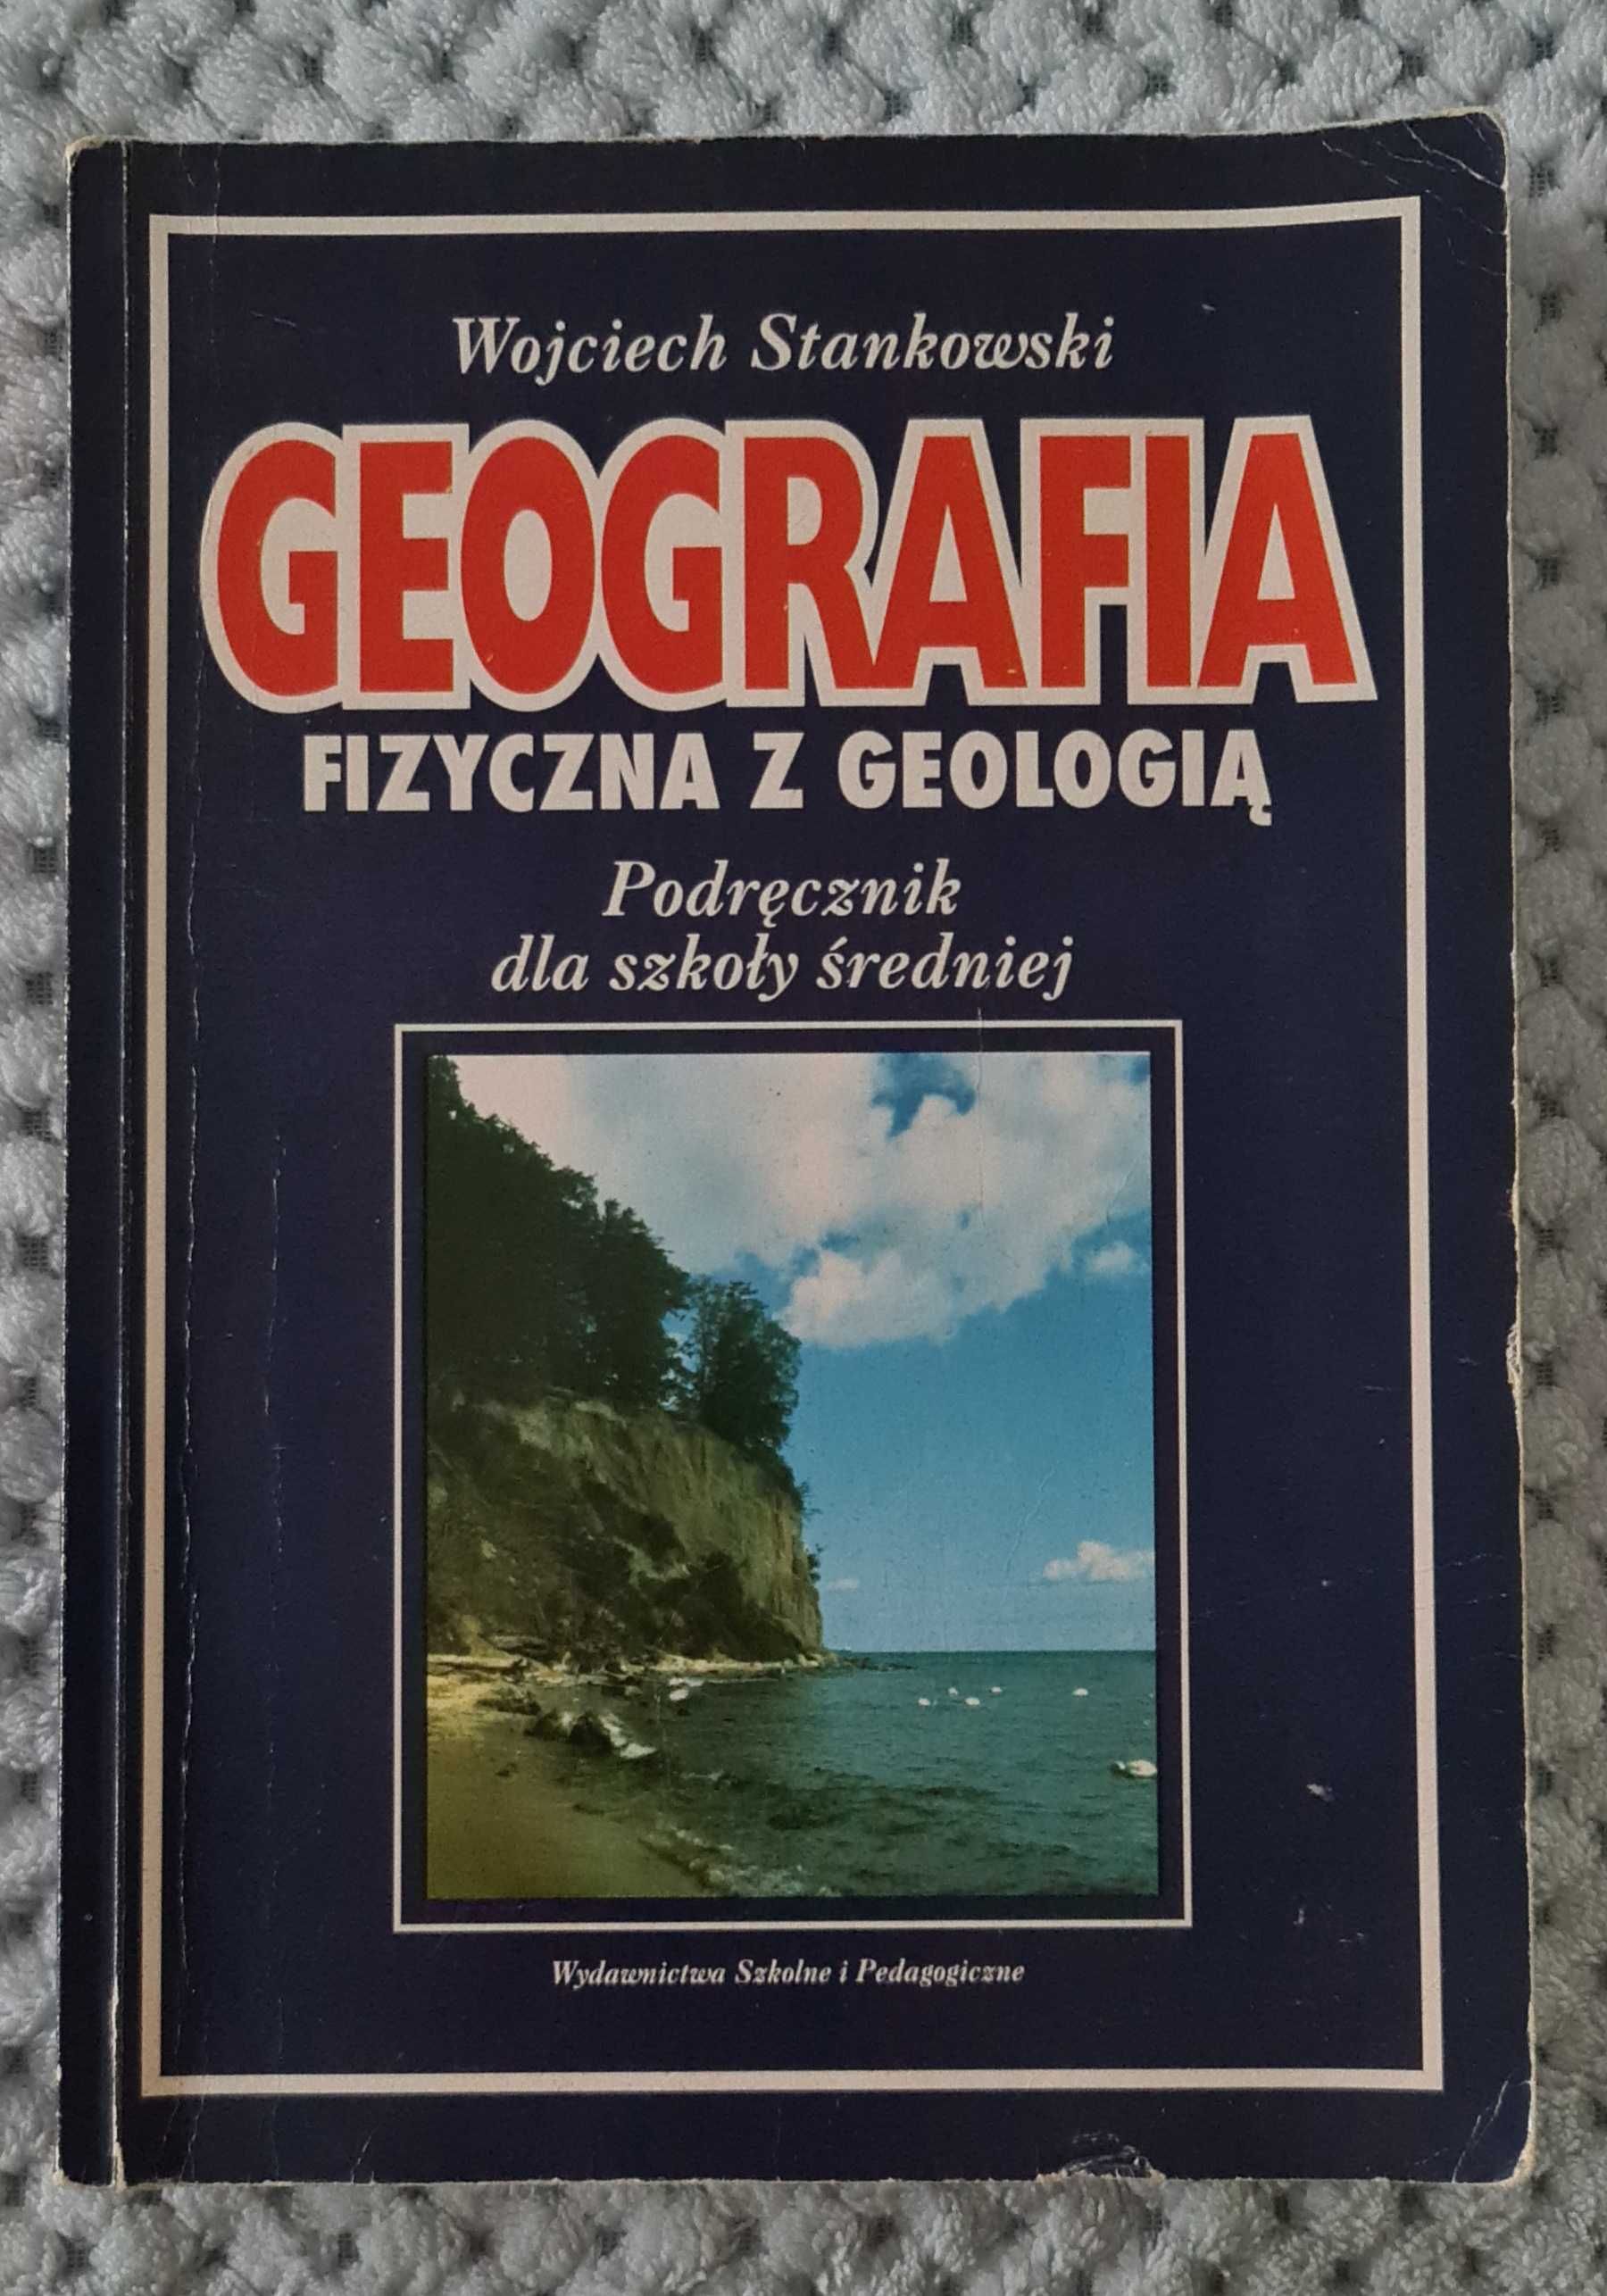 Geofrafia fizyczna z geodezją Wojciech Stankowski podręcznik dla szkół